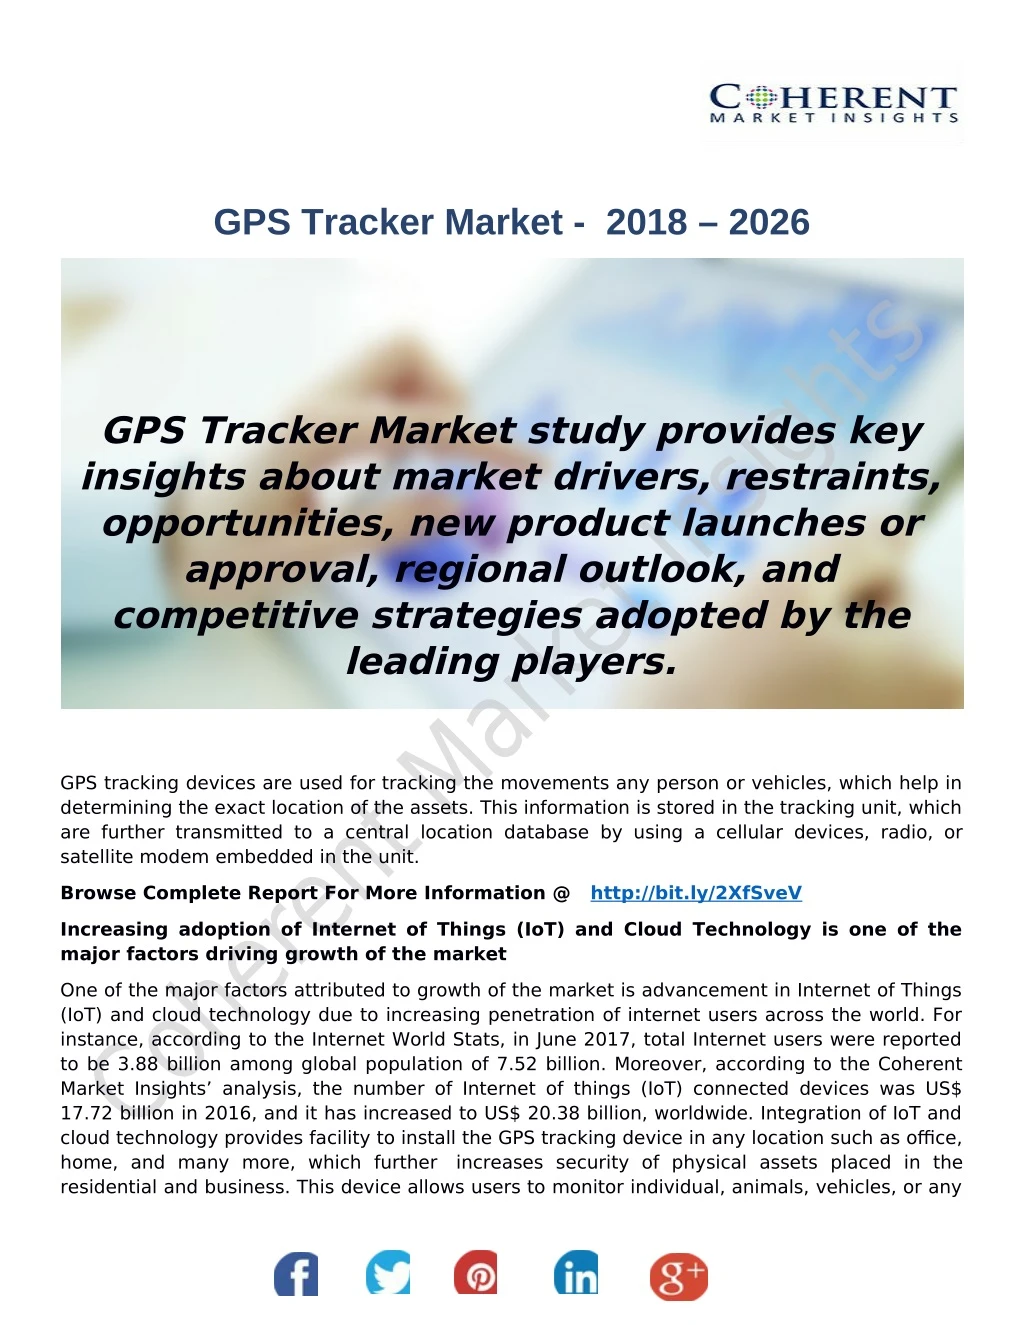 gps tracker market 2018 2026